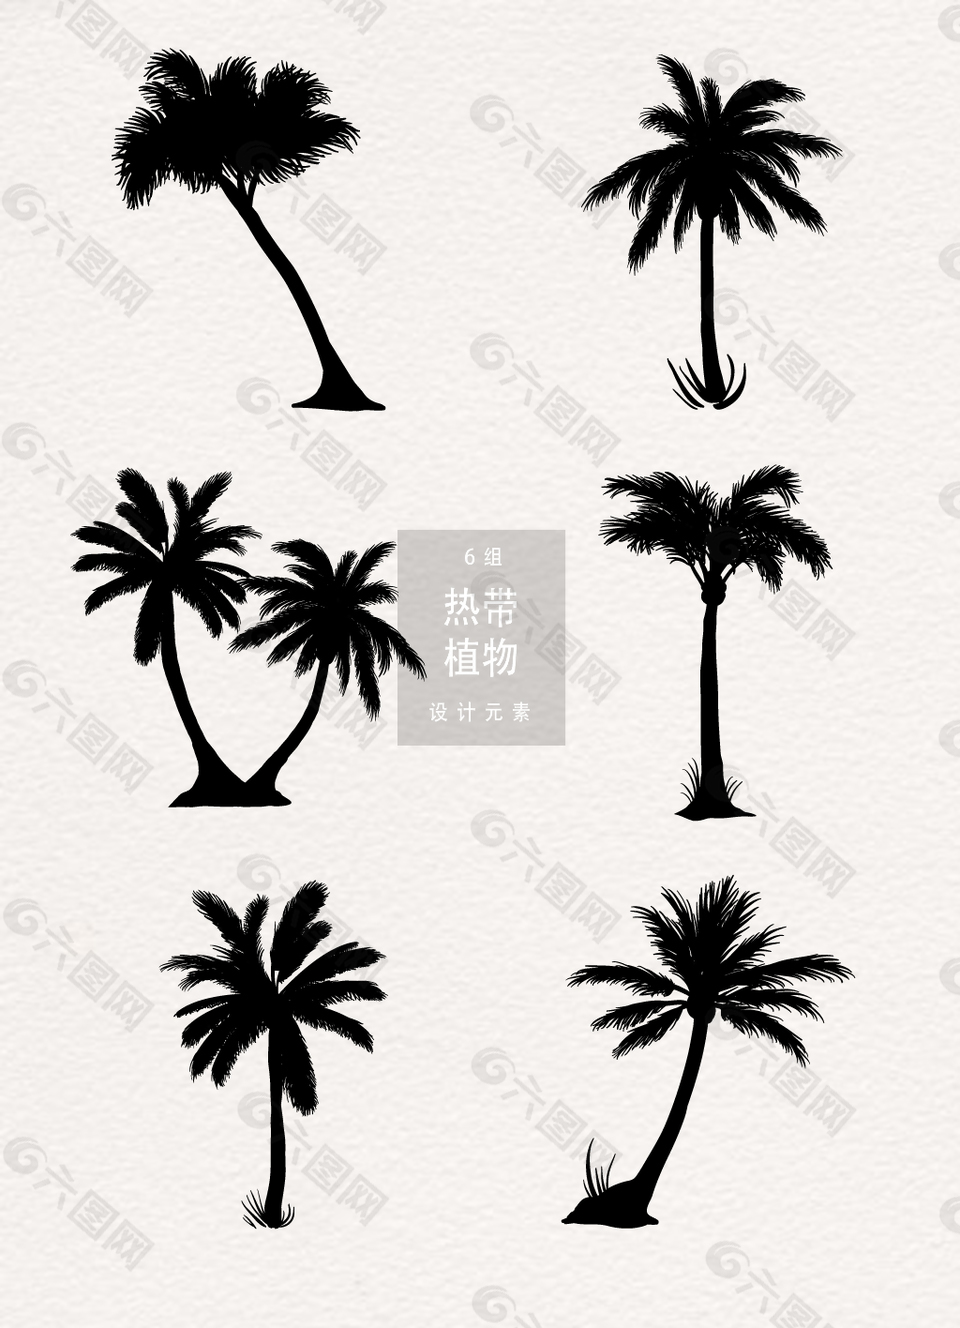 椰子树剪影矢量素材